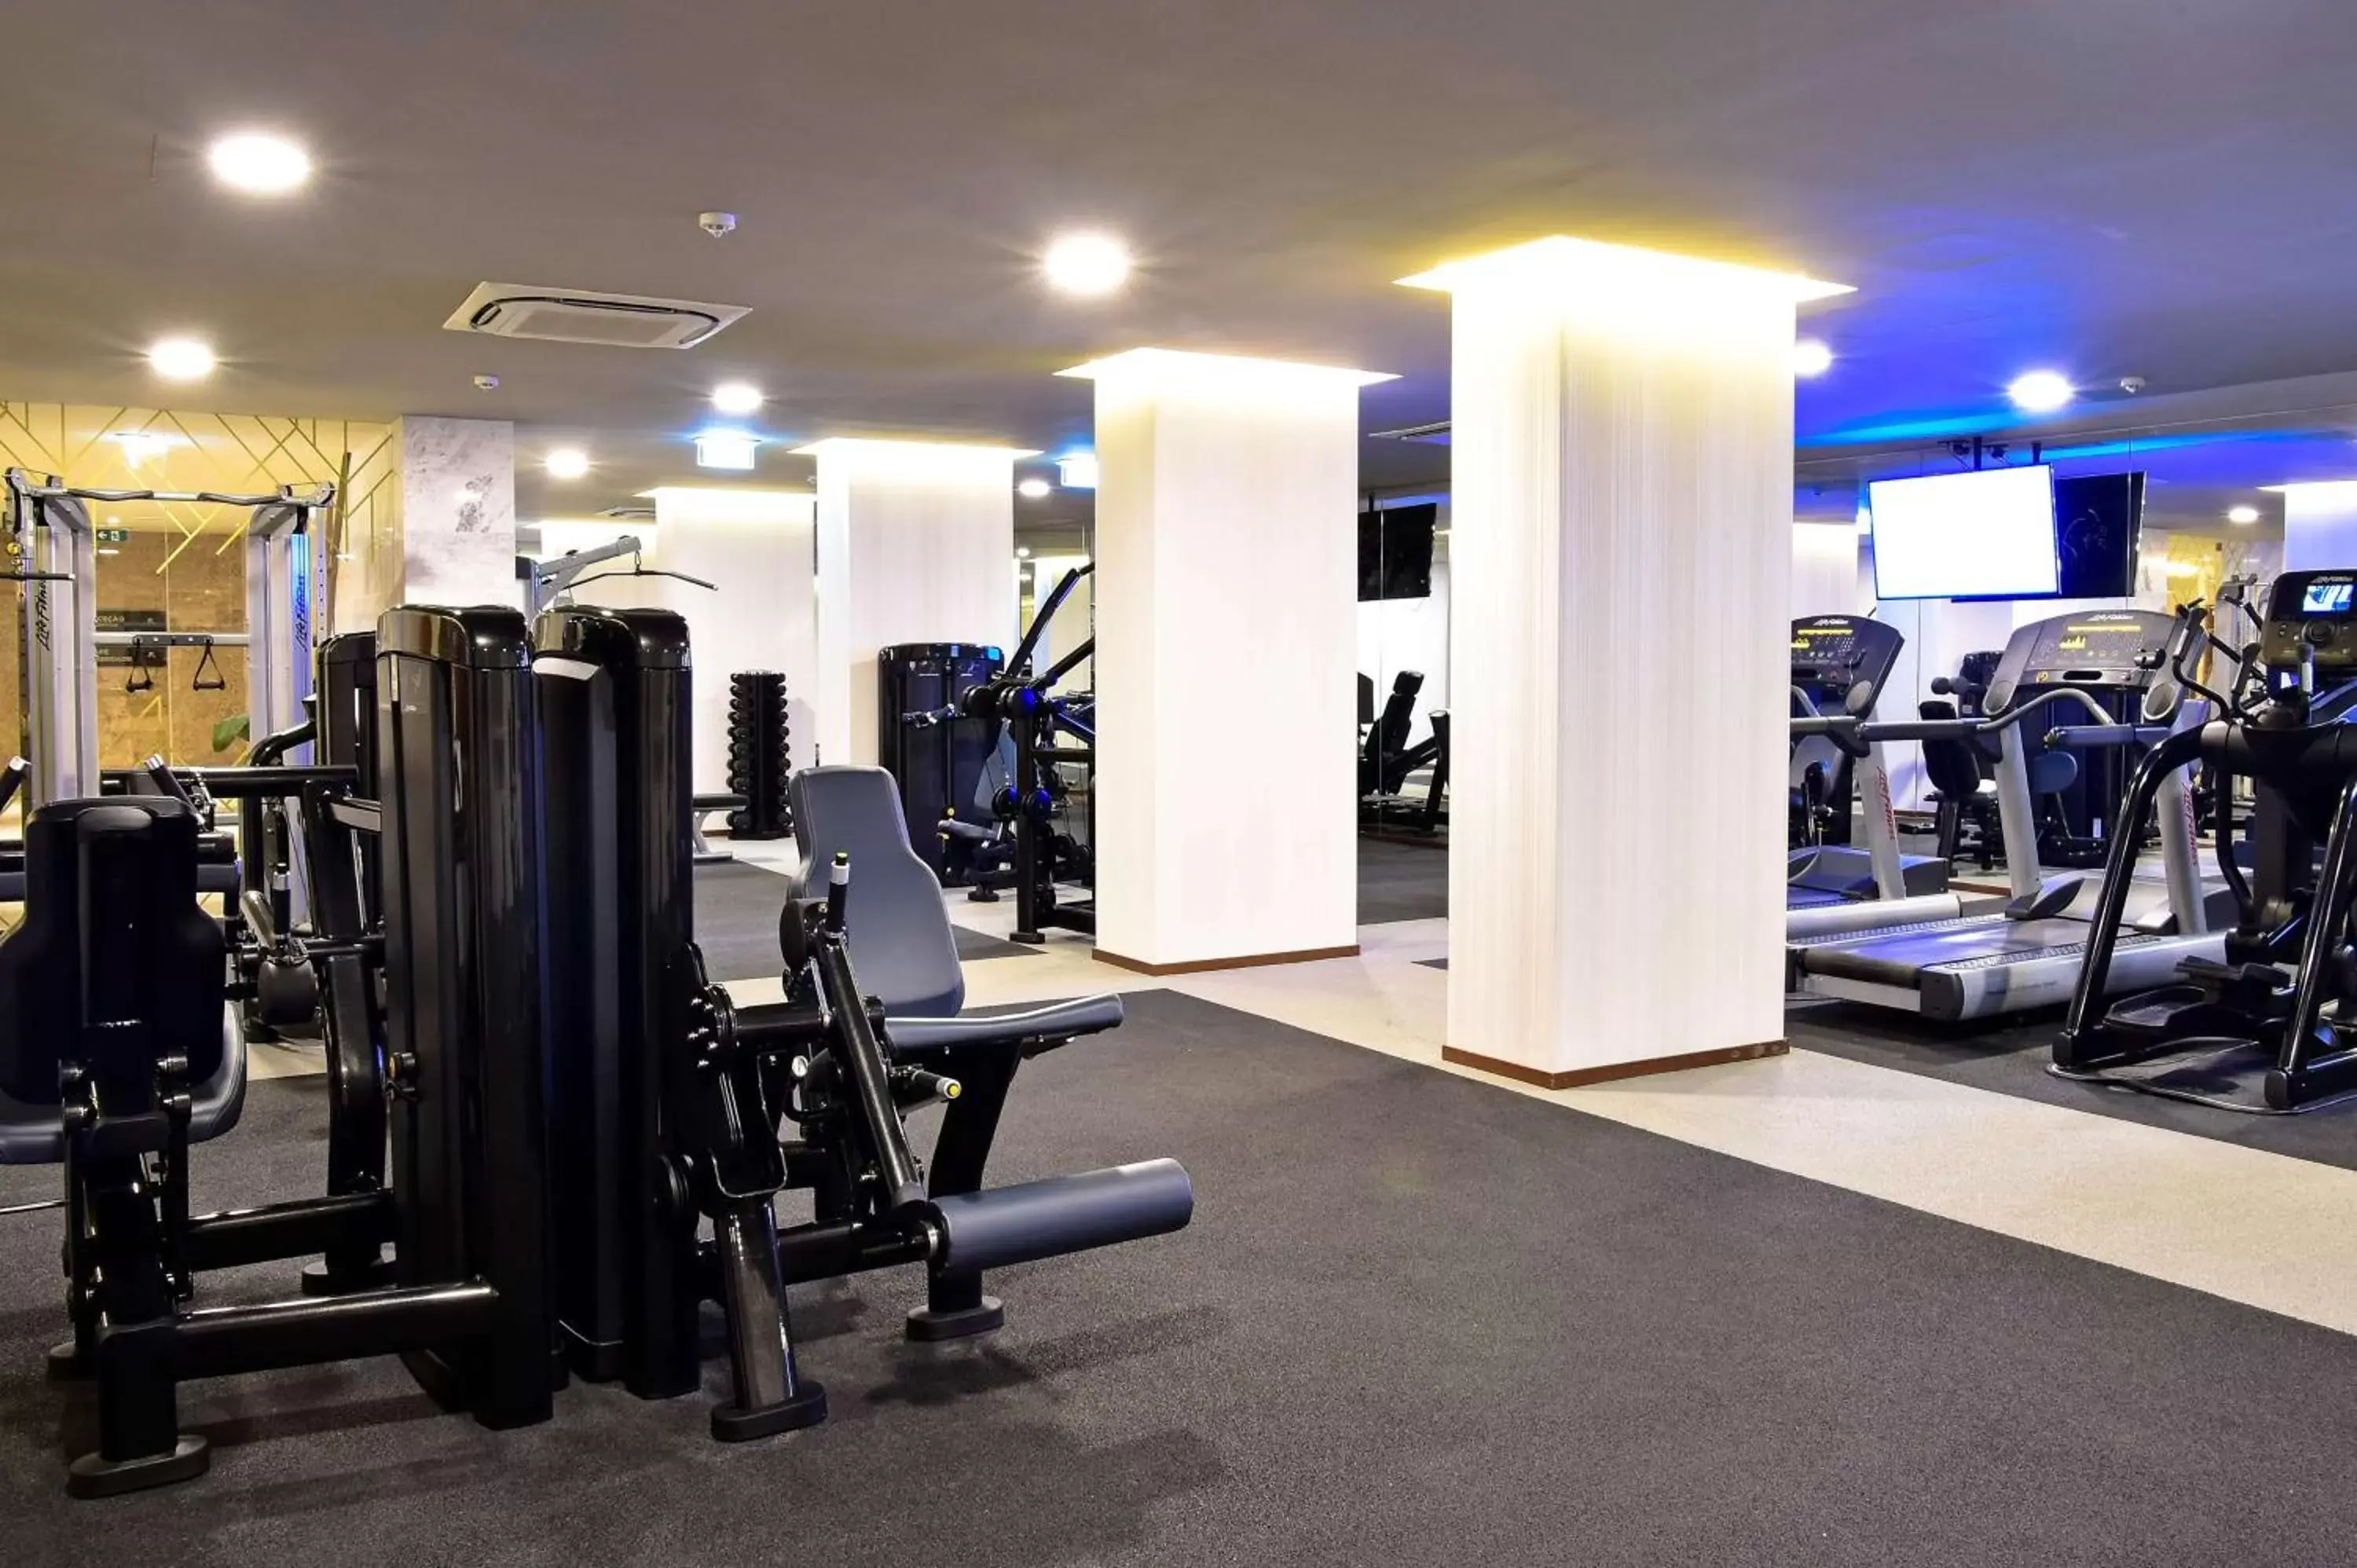 Fitness centre/facilities, Fitness Center/Facilities in Tivoli Avenida Liberdade Lisboa – A Leading Hotel of the World